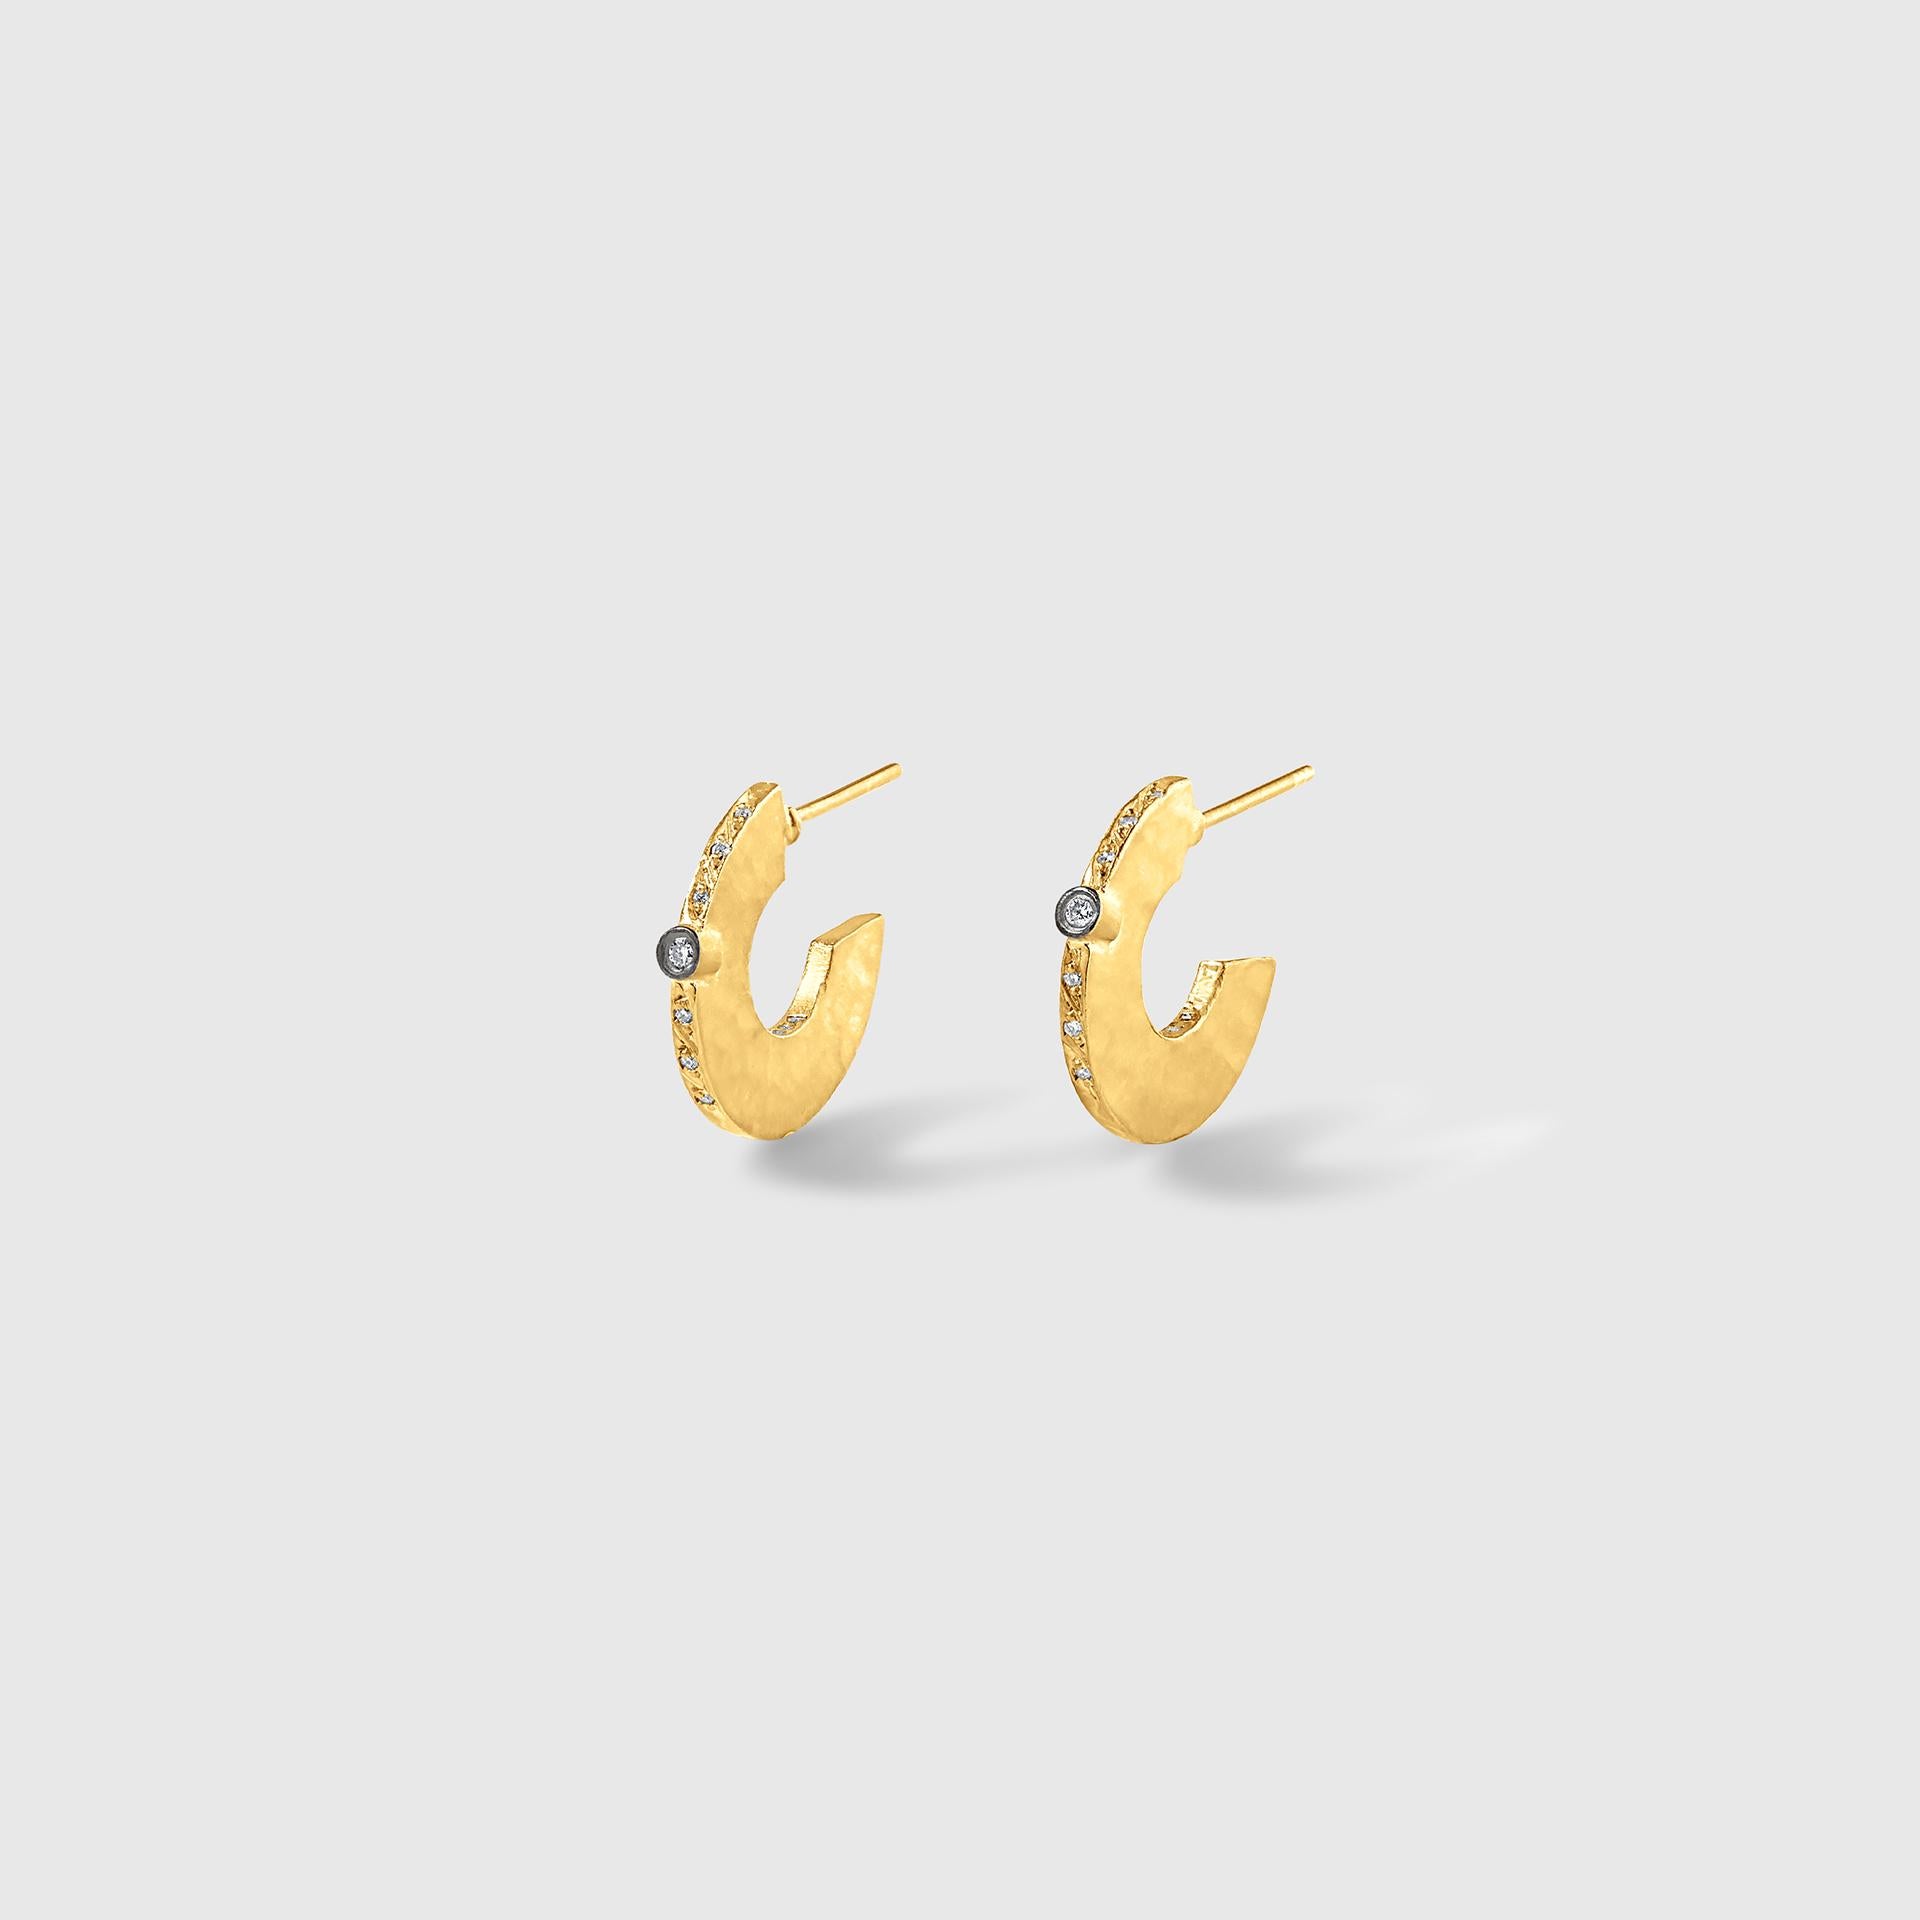 24 karat gold earrings hoops